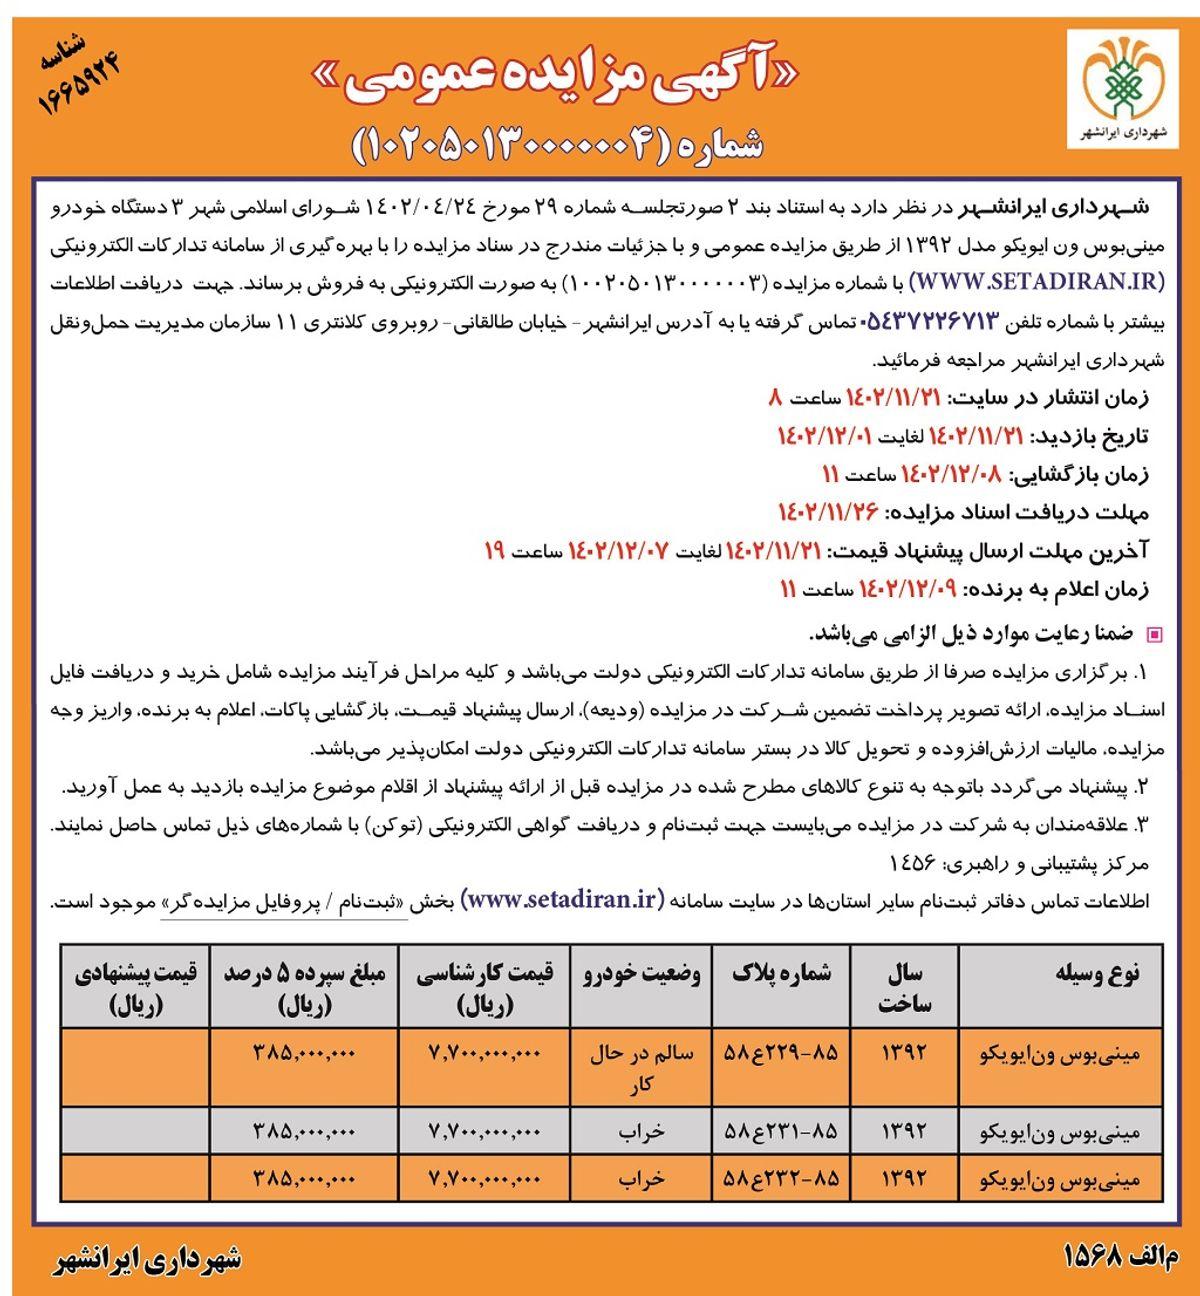 مزایده عمومی فروش سه دستگاه مینی بوس ون ایویکو شرکت شهرداری ایرانشهر